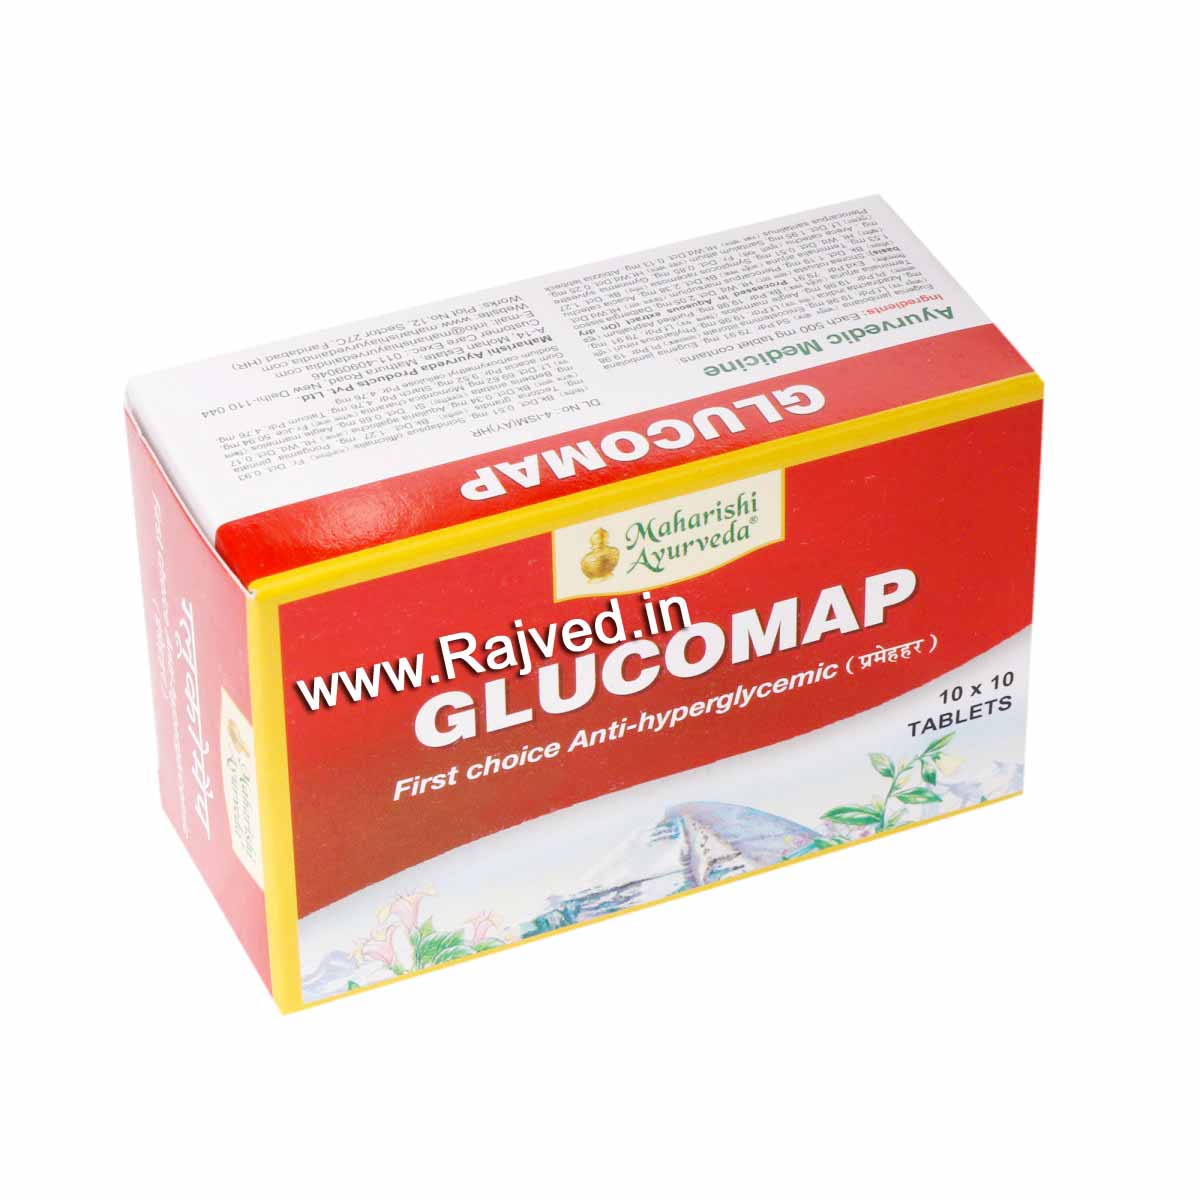 glucomap tab 10tab upto 10% off maharishi ayurveda